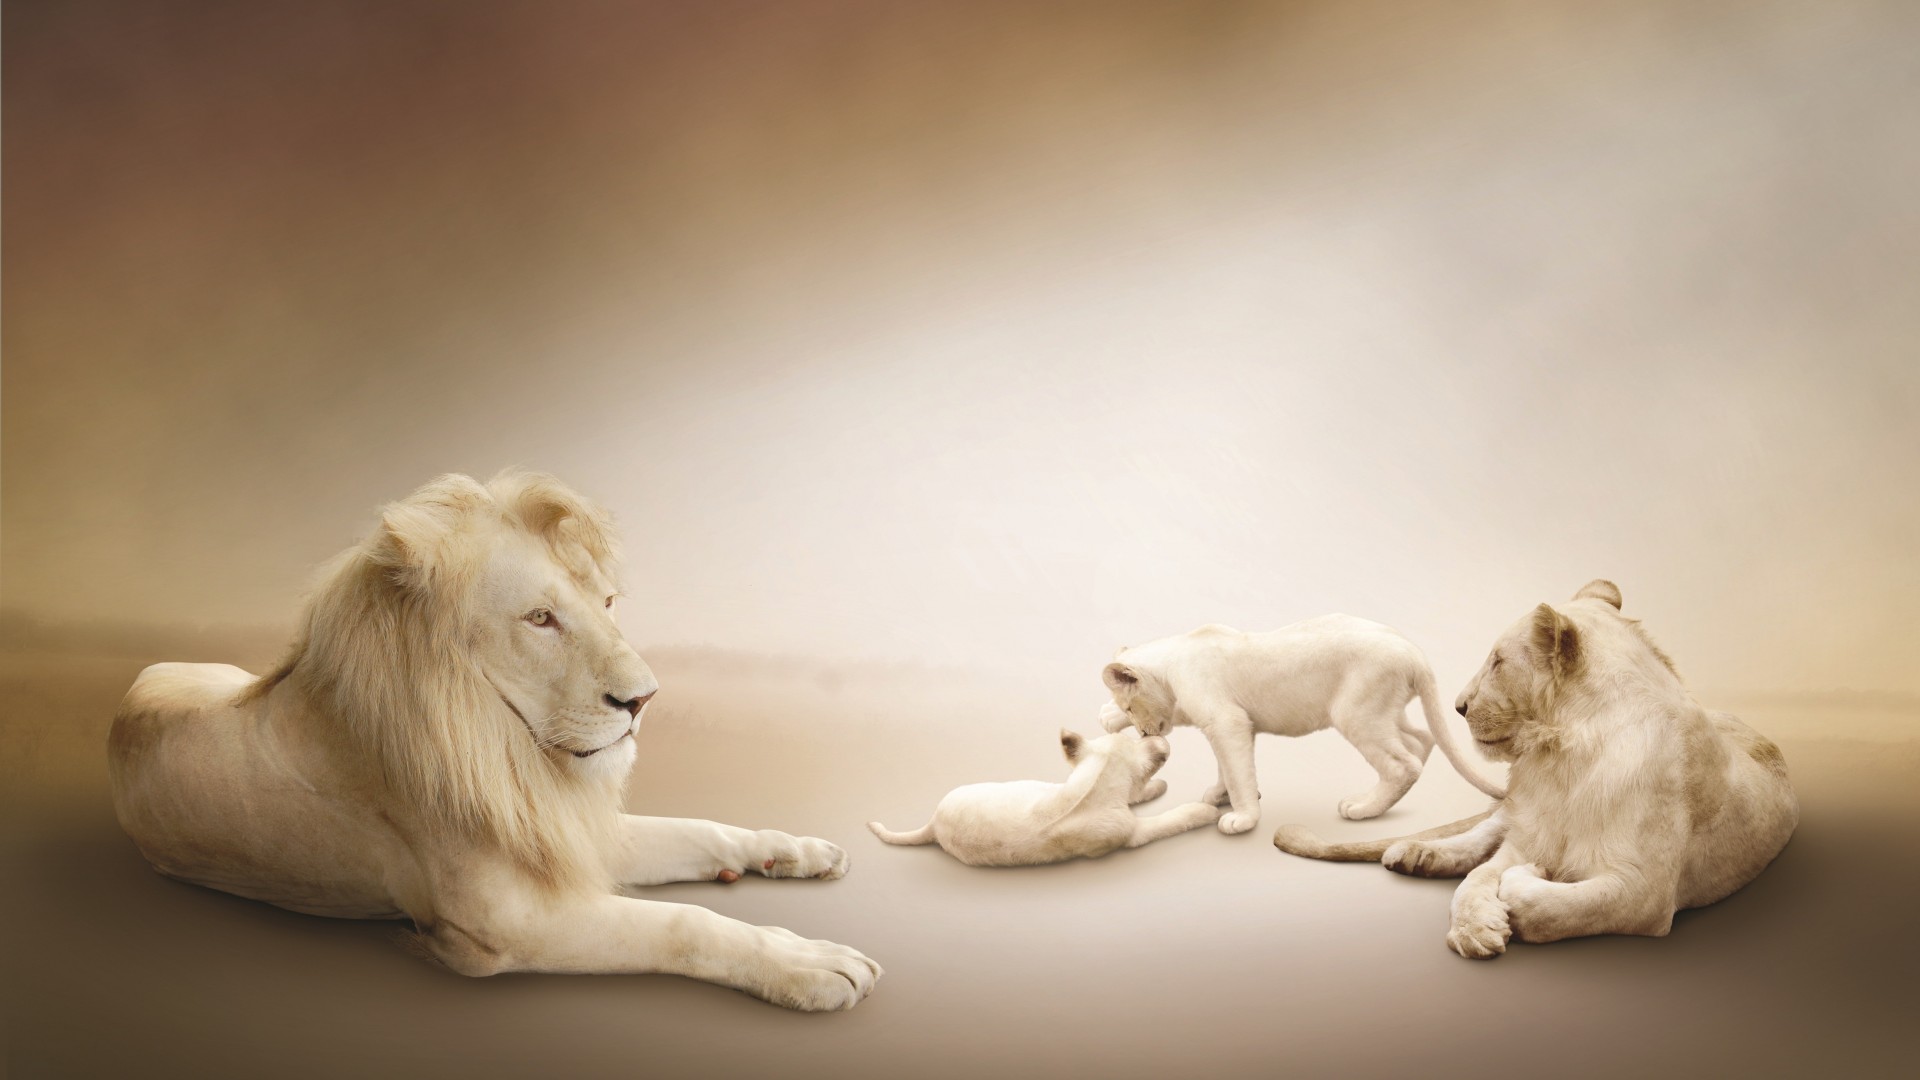 White lion, Lion Family, white background (horizontal)